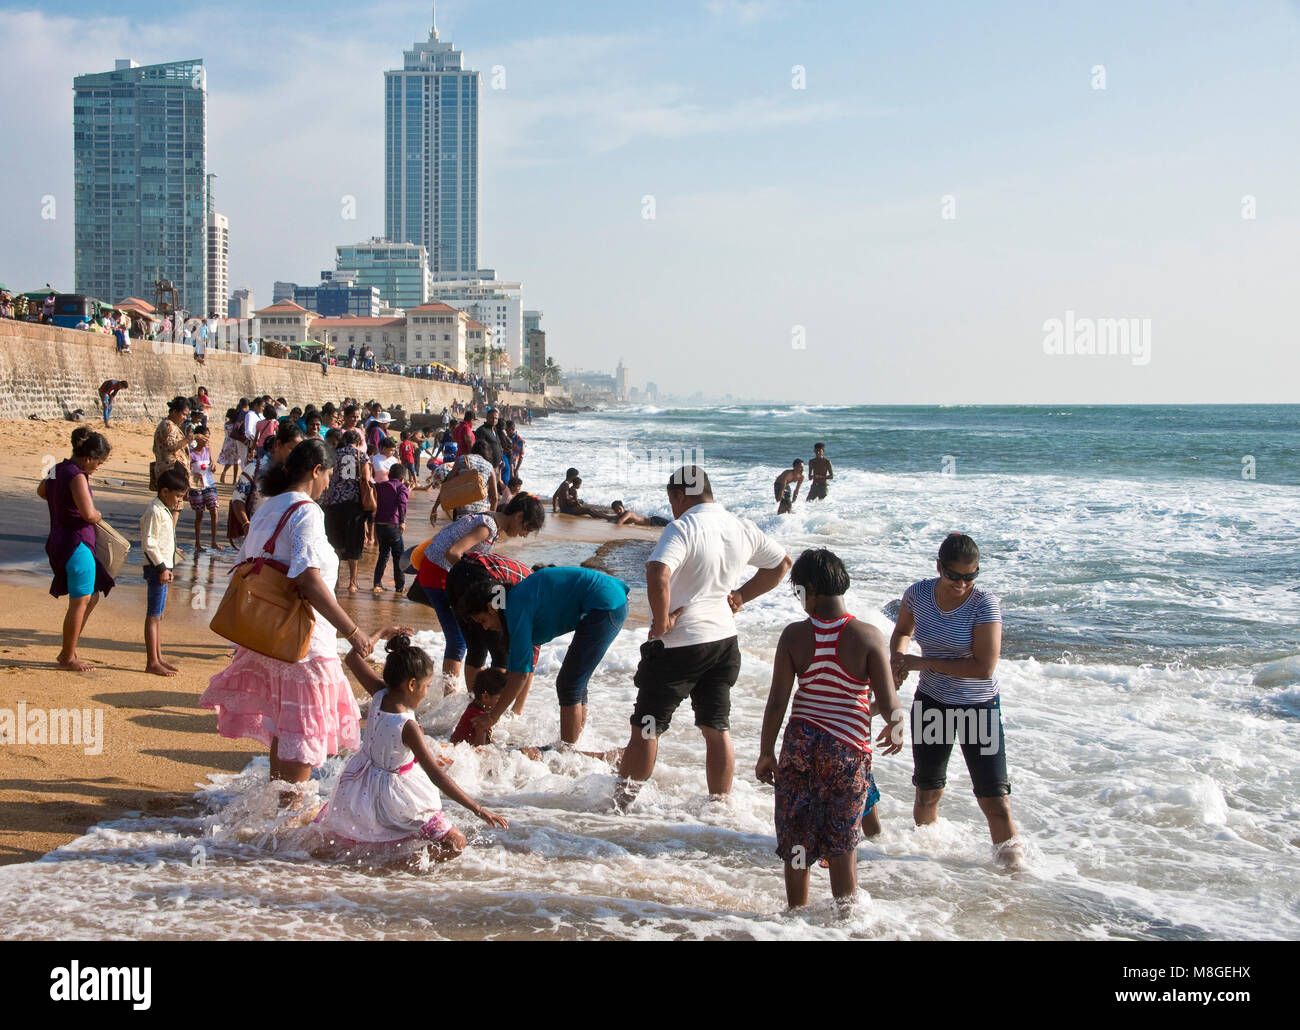 Die Menschen vor Ort am Strand von Galle Face Green - ein beliebter Ort in Colombo, die Zeit zu verbringen, zu spielen und über das Meer. Stockfoto